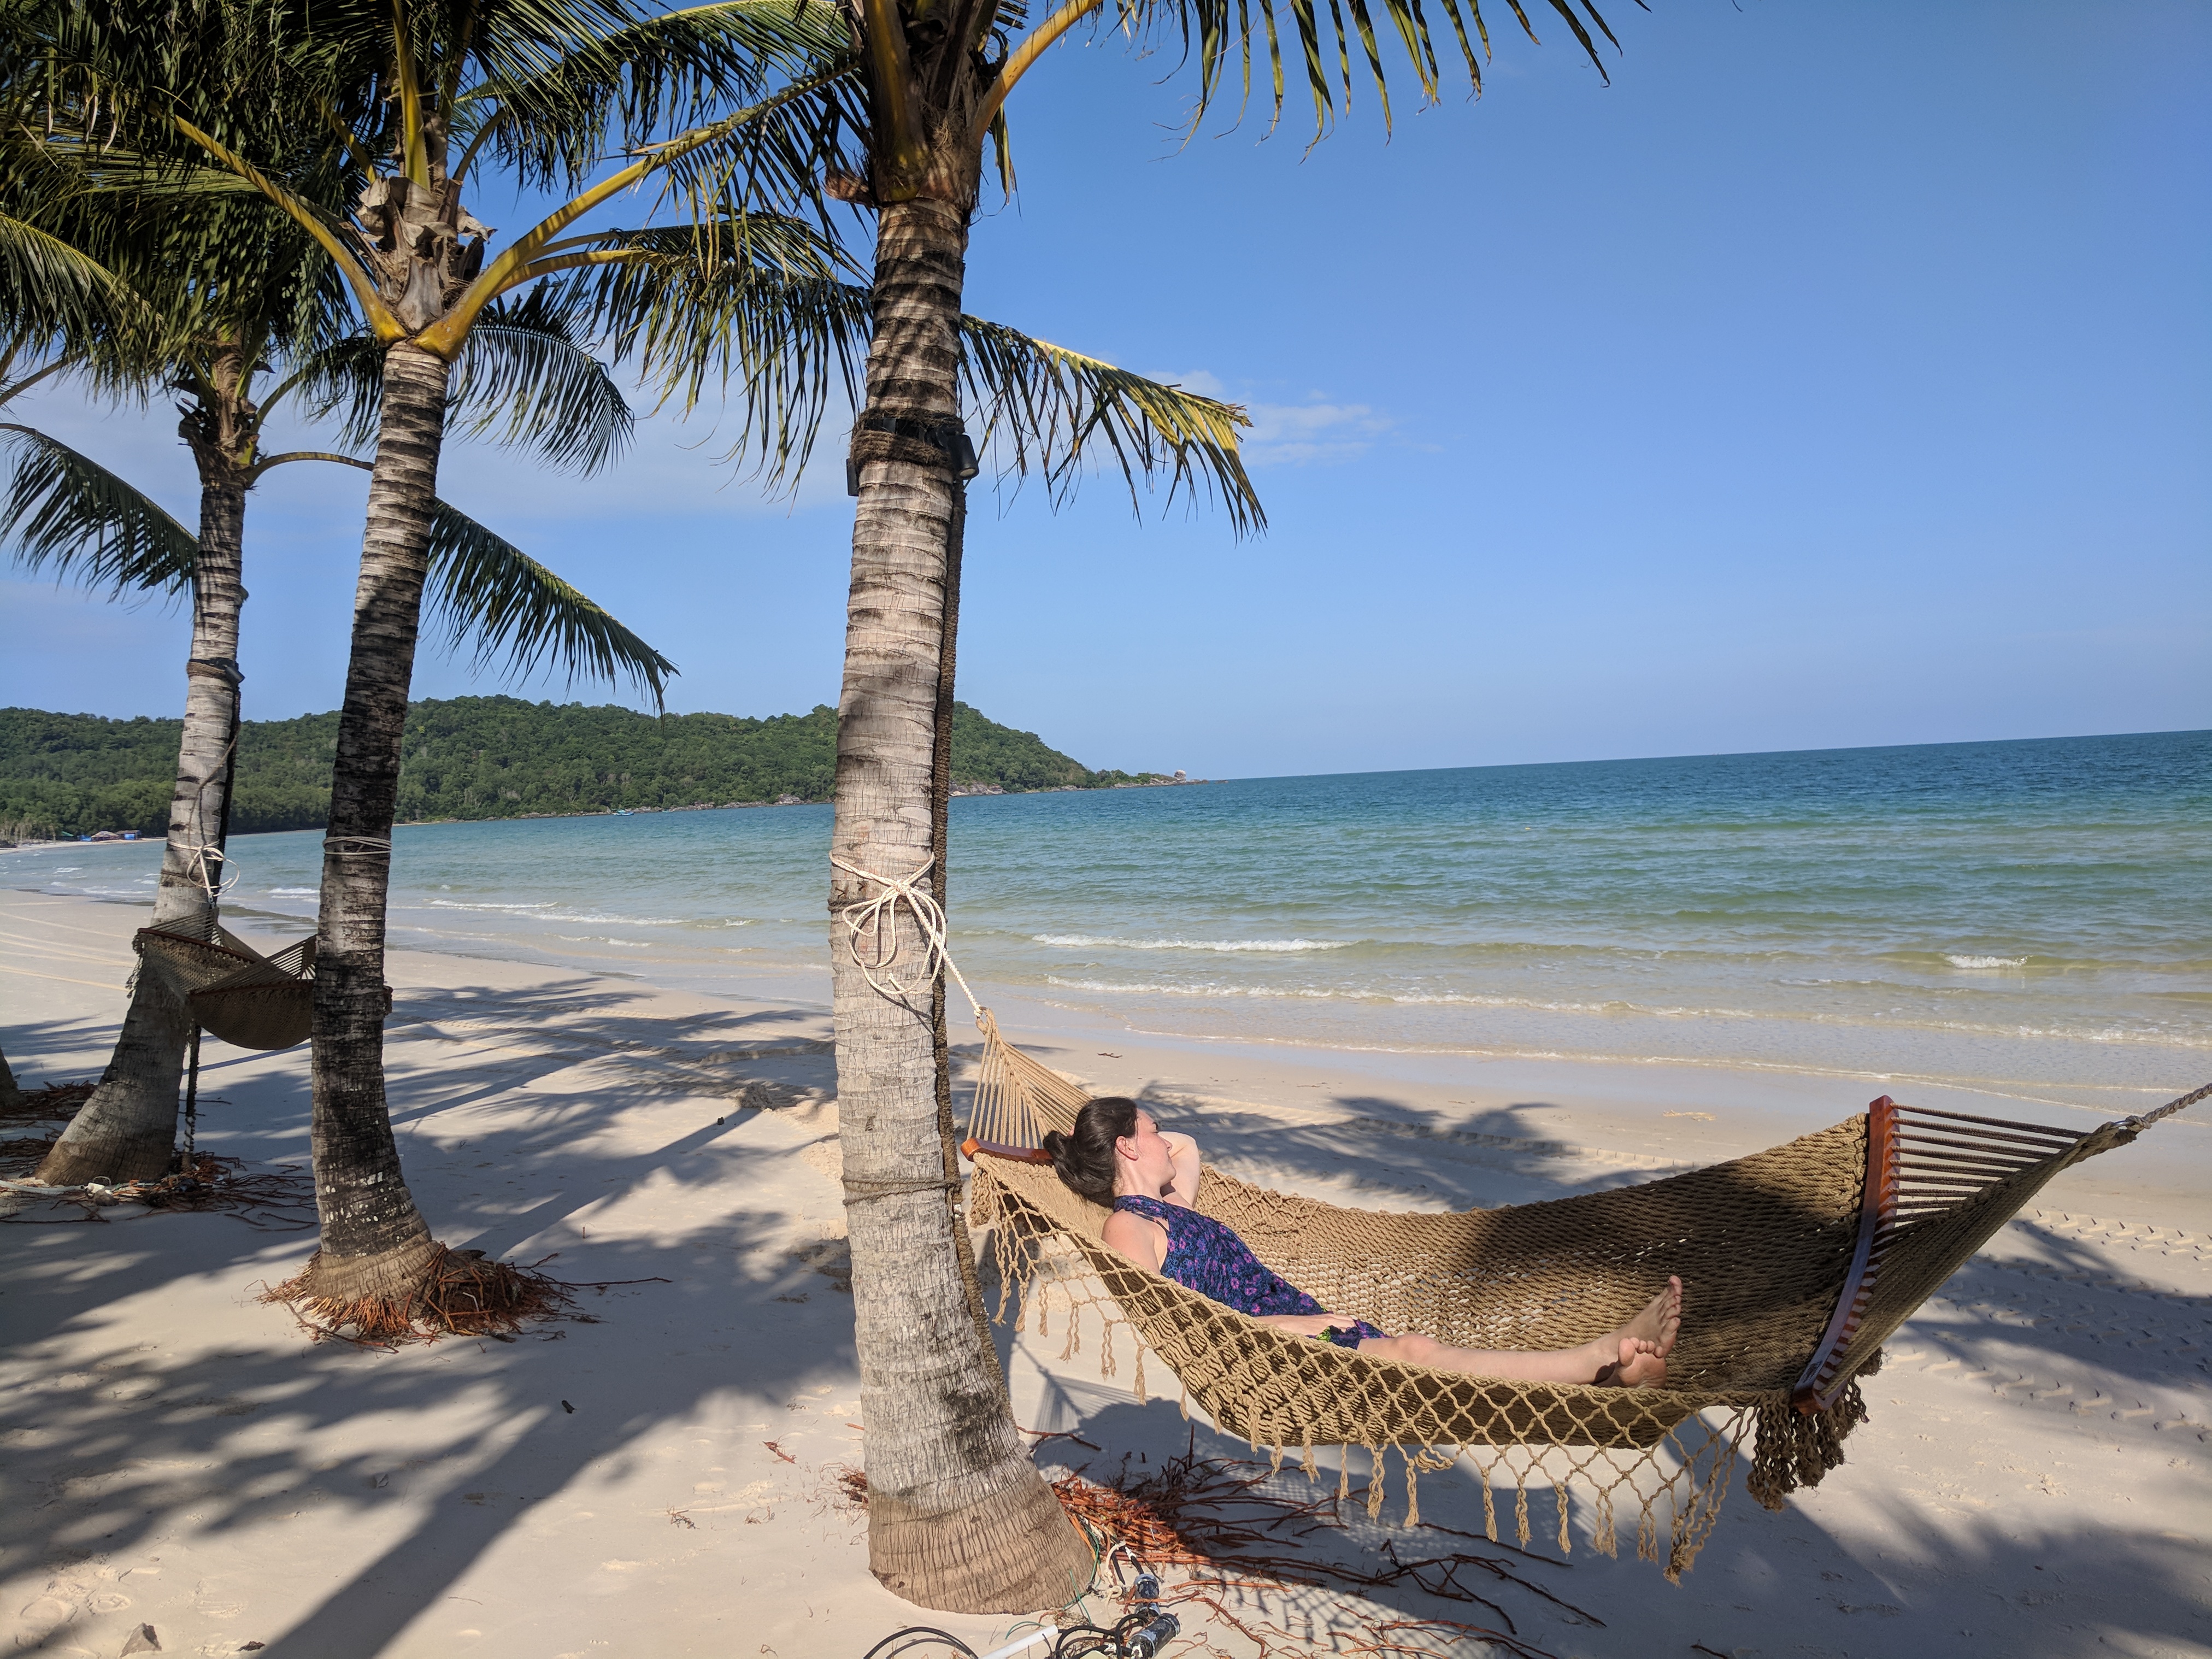 a woman lying in a hammock on a beach